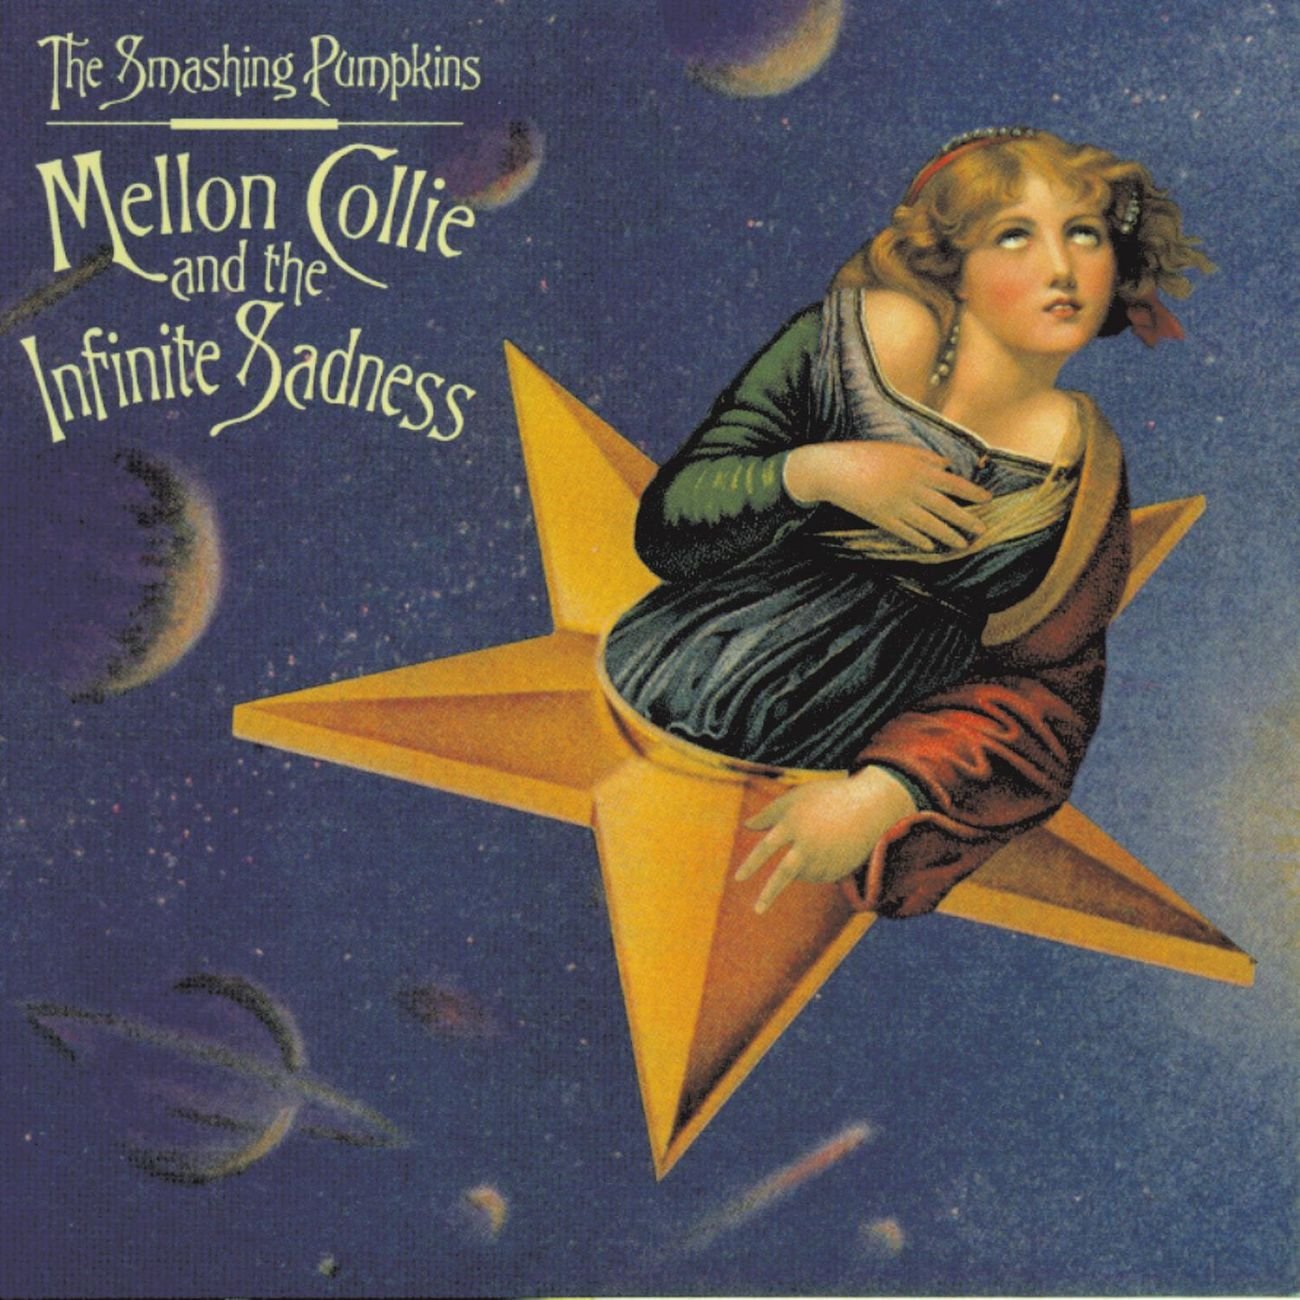 Smashing Pumpkins, ‘Mellon Collie and the Infinite Sadness‘ (1995) - 10 millió<br /><br />Kicsit csalóka ez az eredmény, hiszen egy dupla albumról van szó, ott kint pedig lemezenként értik az eladásokat, szóval... De azért az ötmilliós eladás sem olyan vészes, sőt!